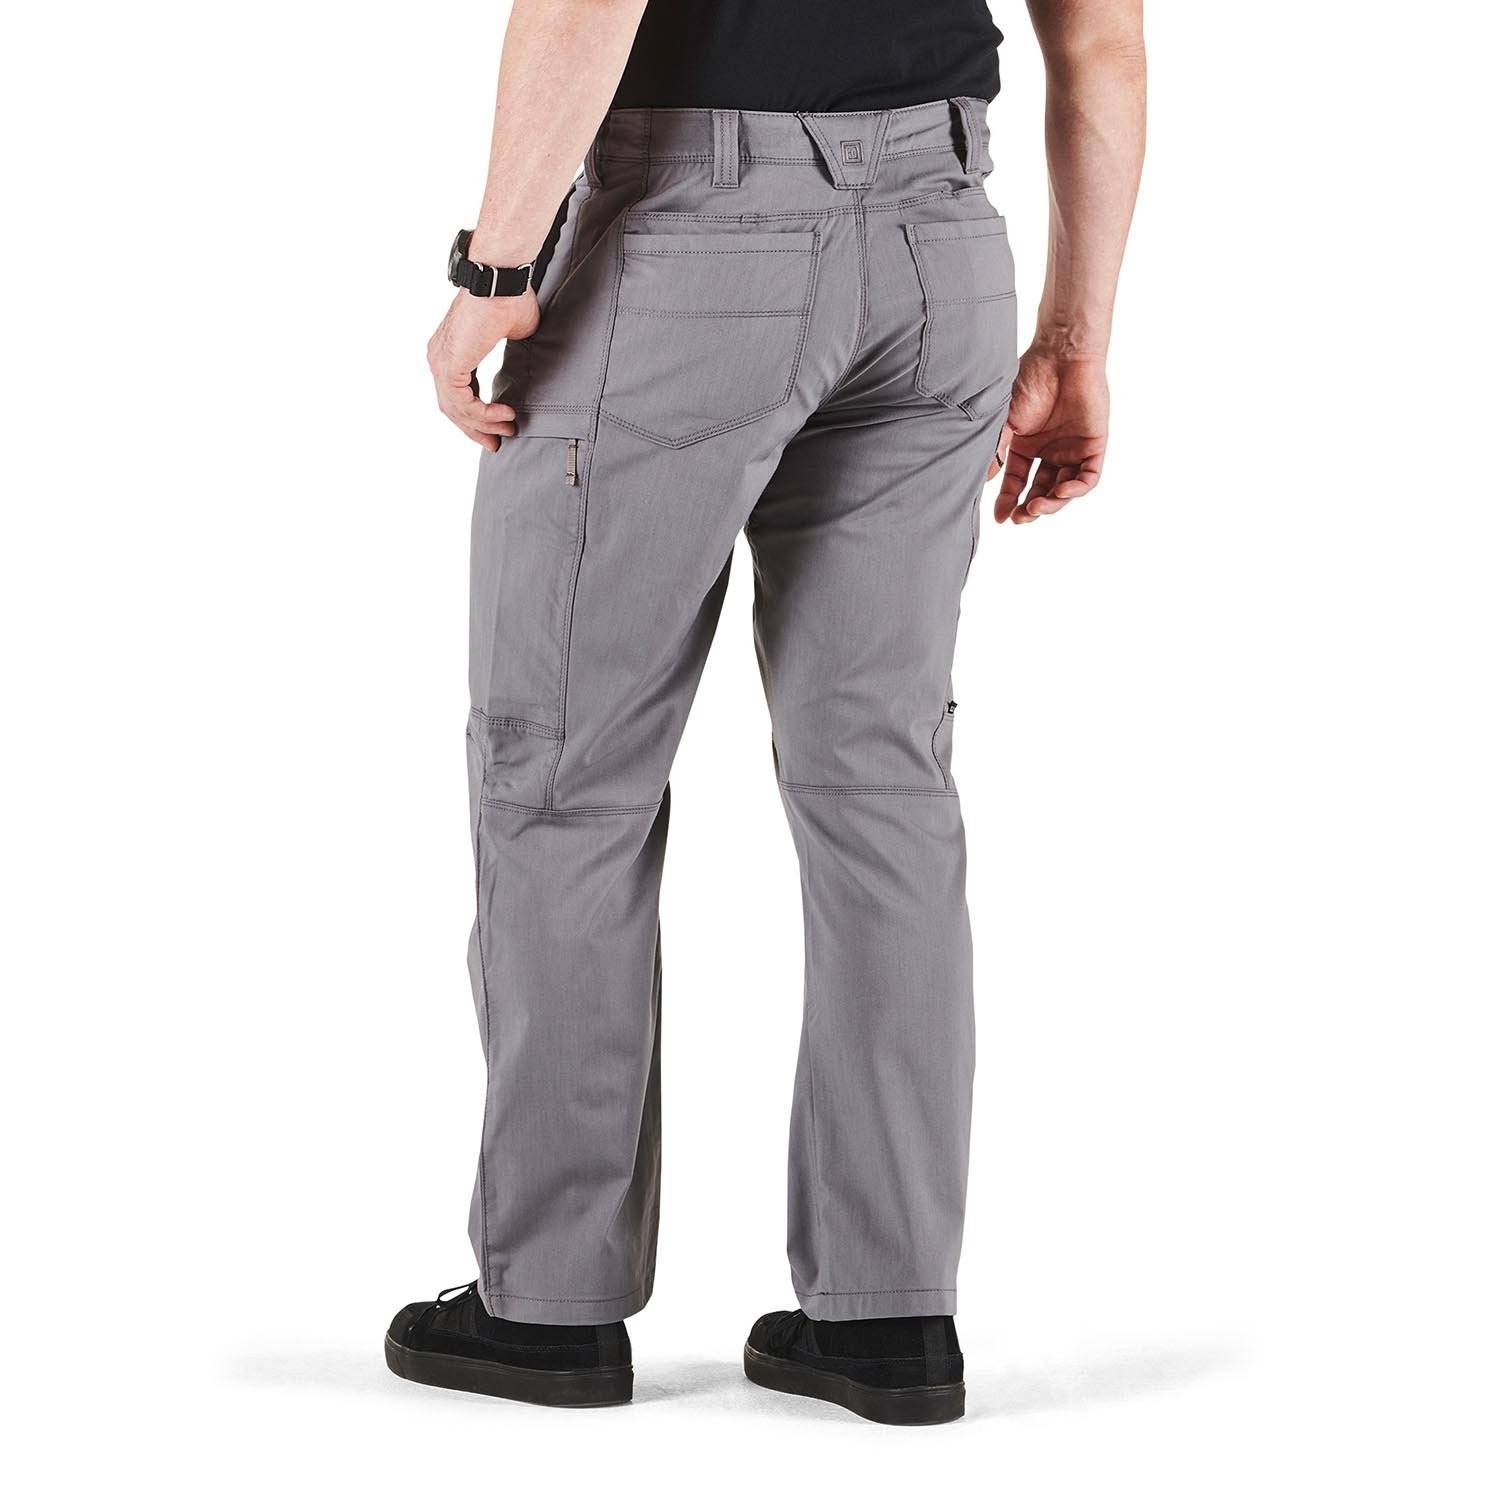 5.11 Tactical Apex Pants